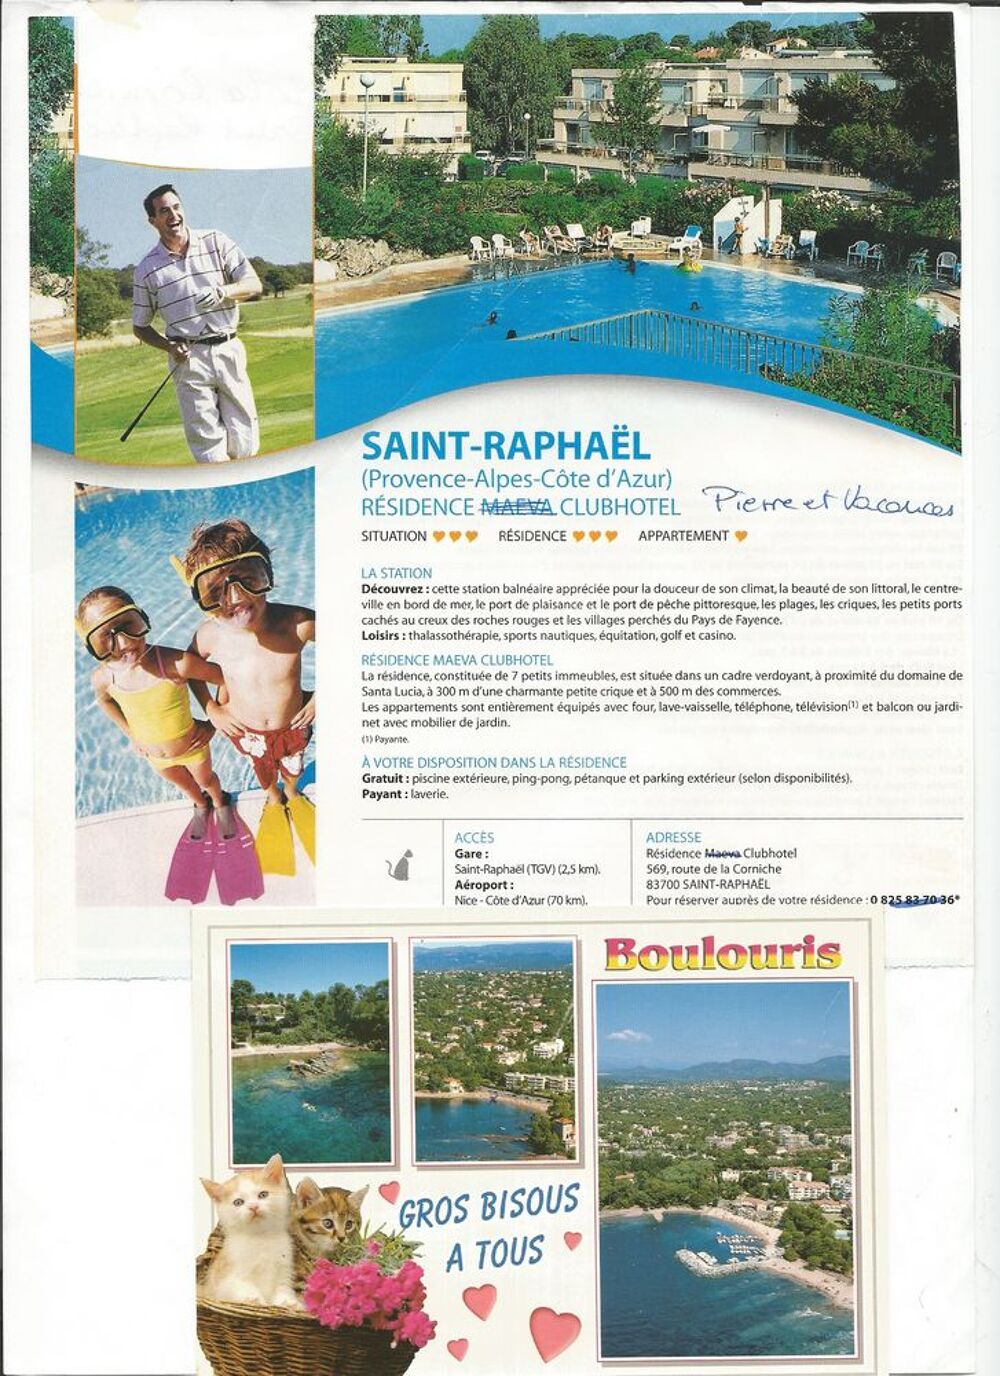 Vente Appartement A St Raphal QUINZAINE dans MULTIPROPRIETE appart 5 pers Saint-raphal